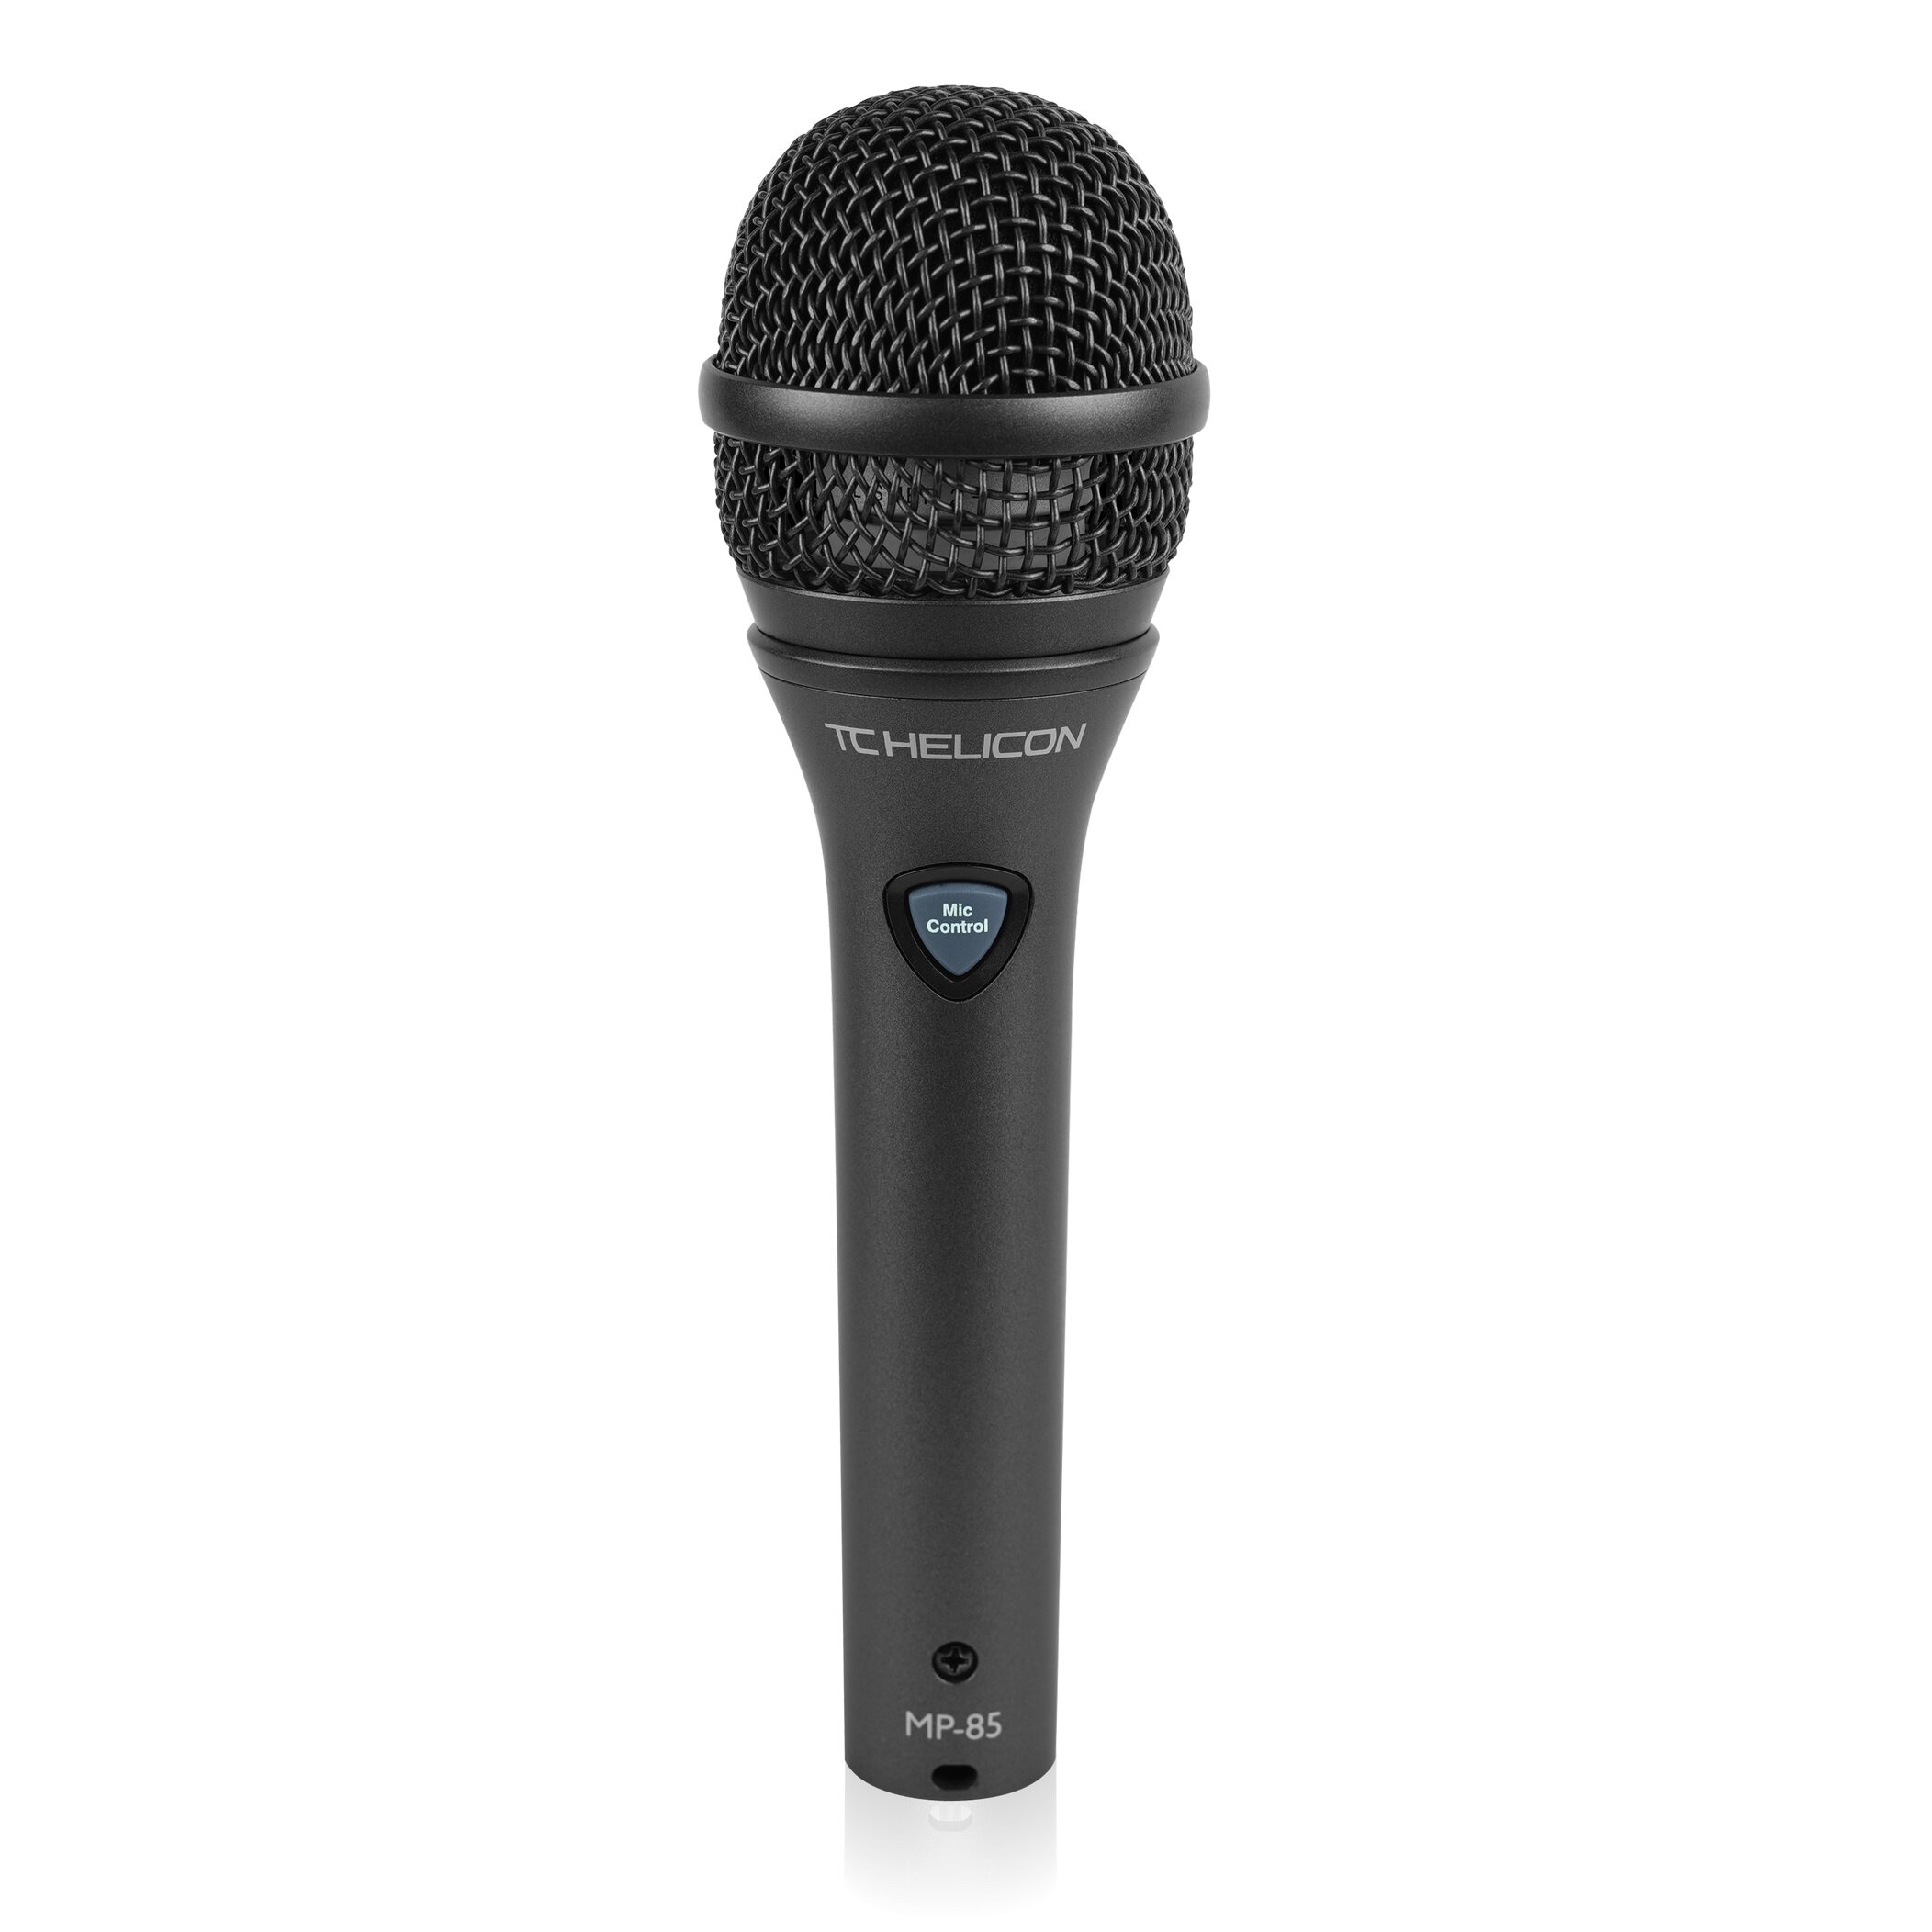 TC HELICON MP-85 - вокальный динамический микрофон с капсюлем Lismer2 оптимизирован для работы TC H INV_MP-85